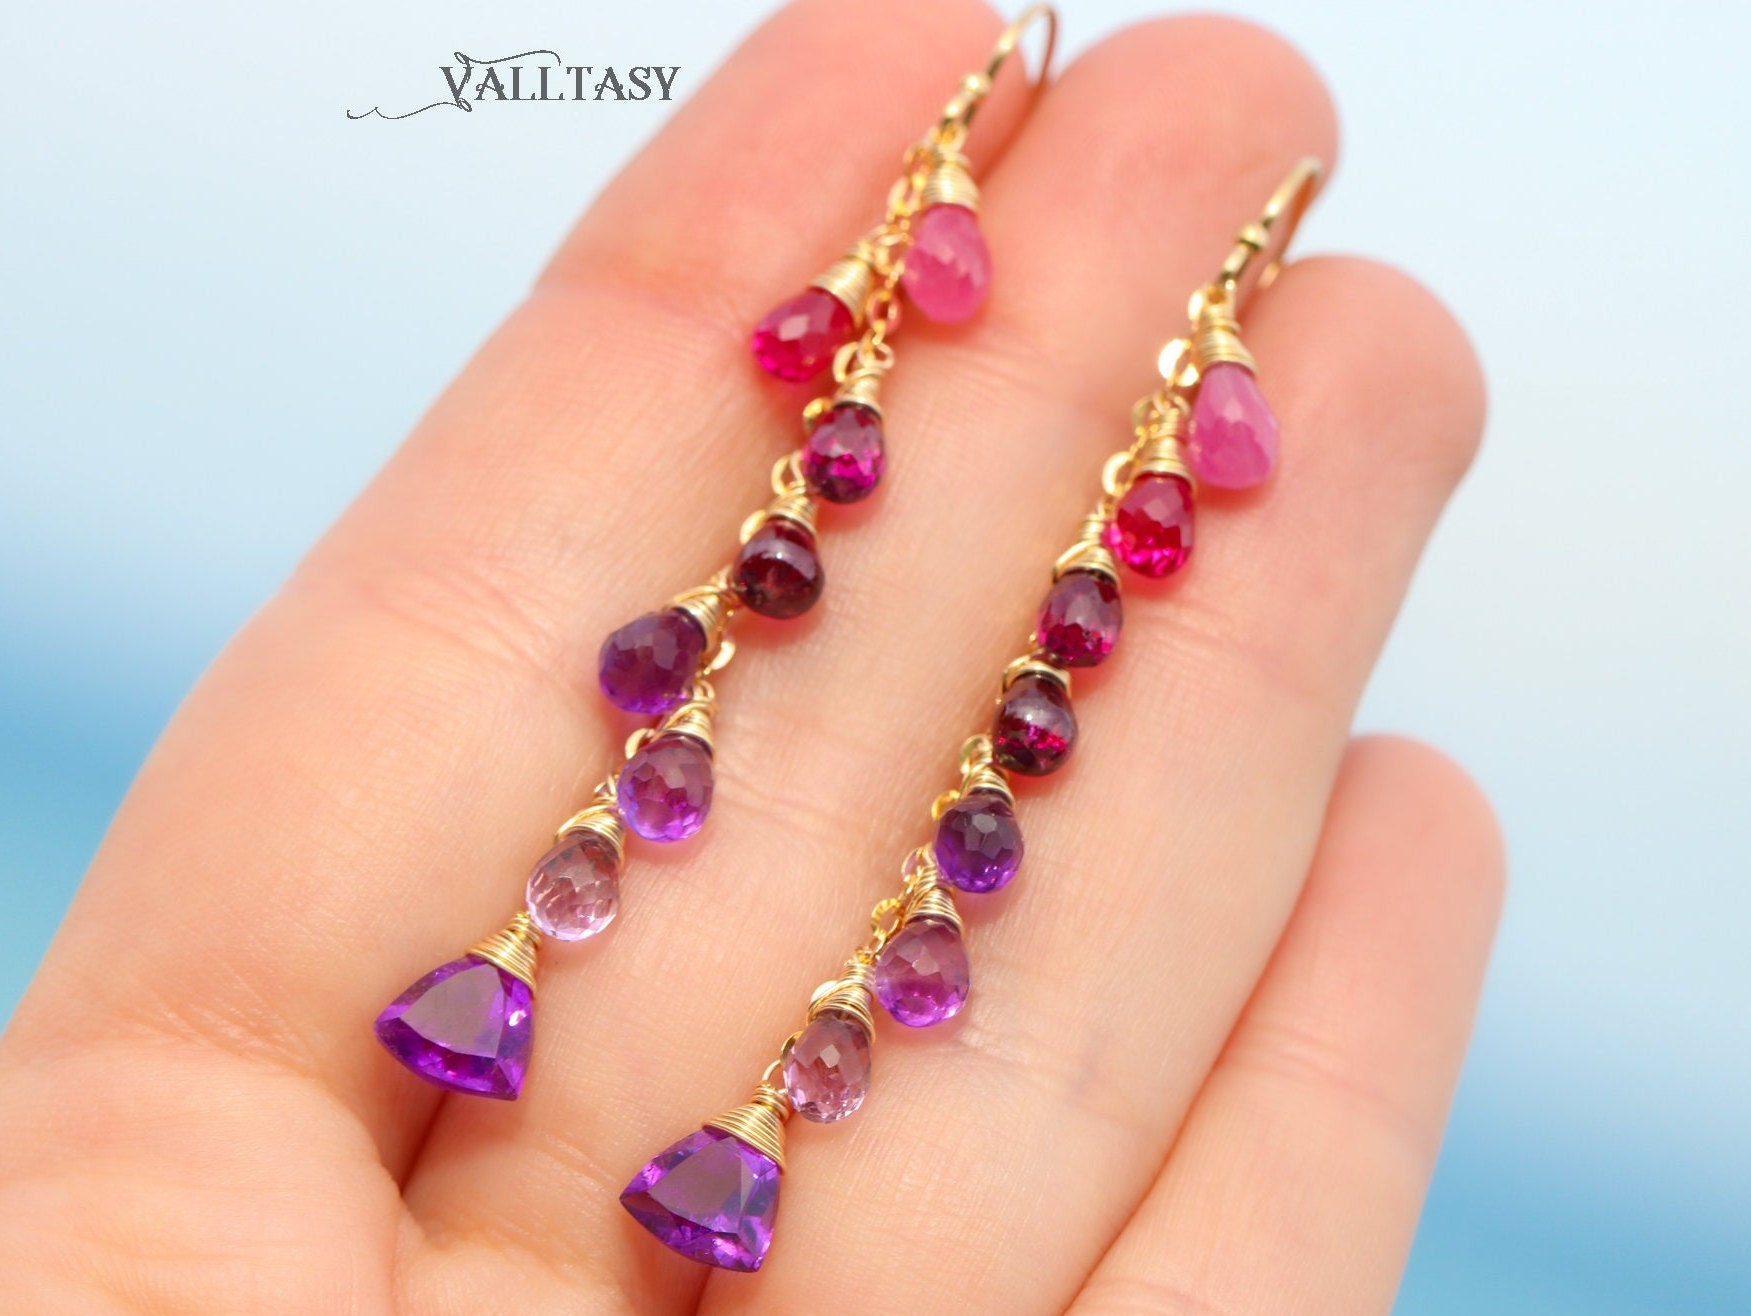 Solid Gold 14K Pink Purple Gemstone Earrings Cascade, Colorful Long Multi Gemstone Earrings